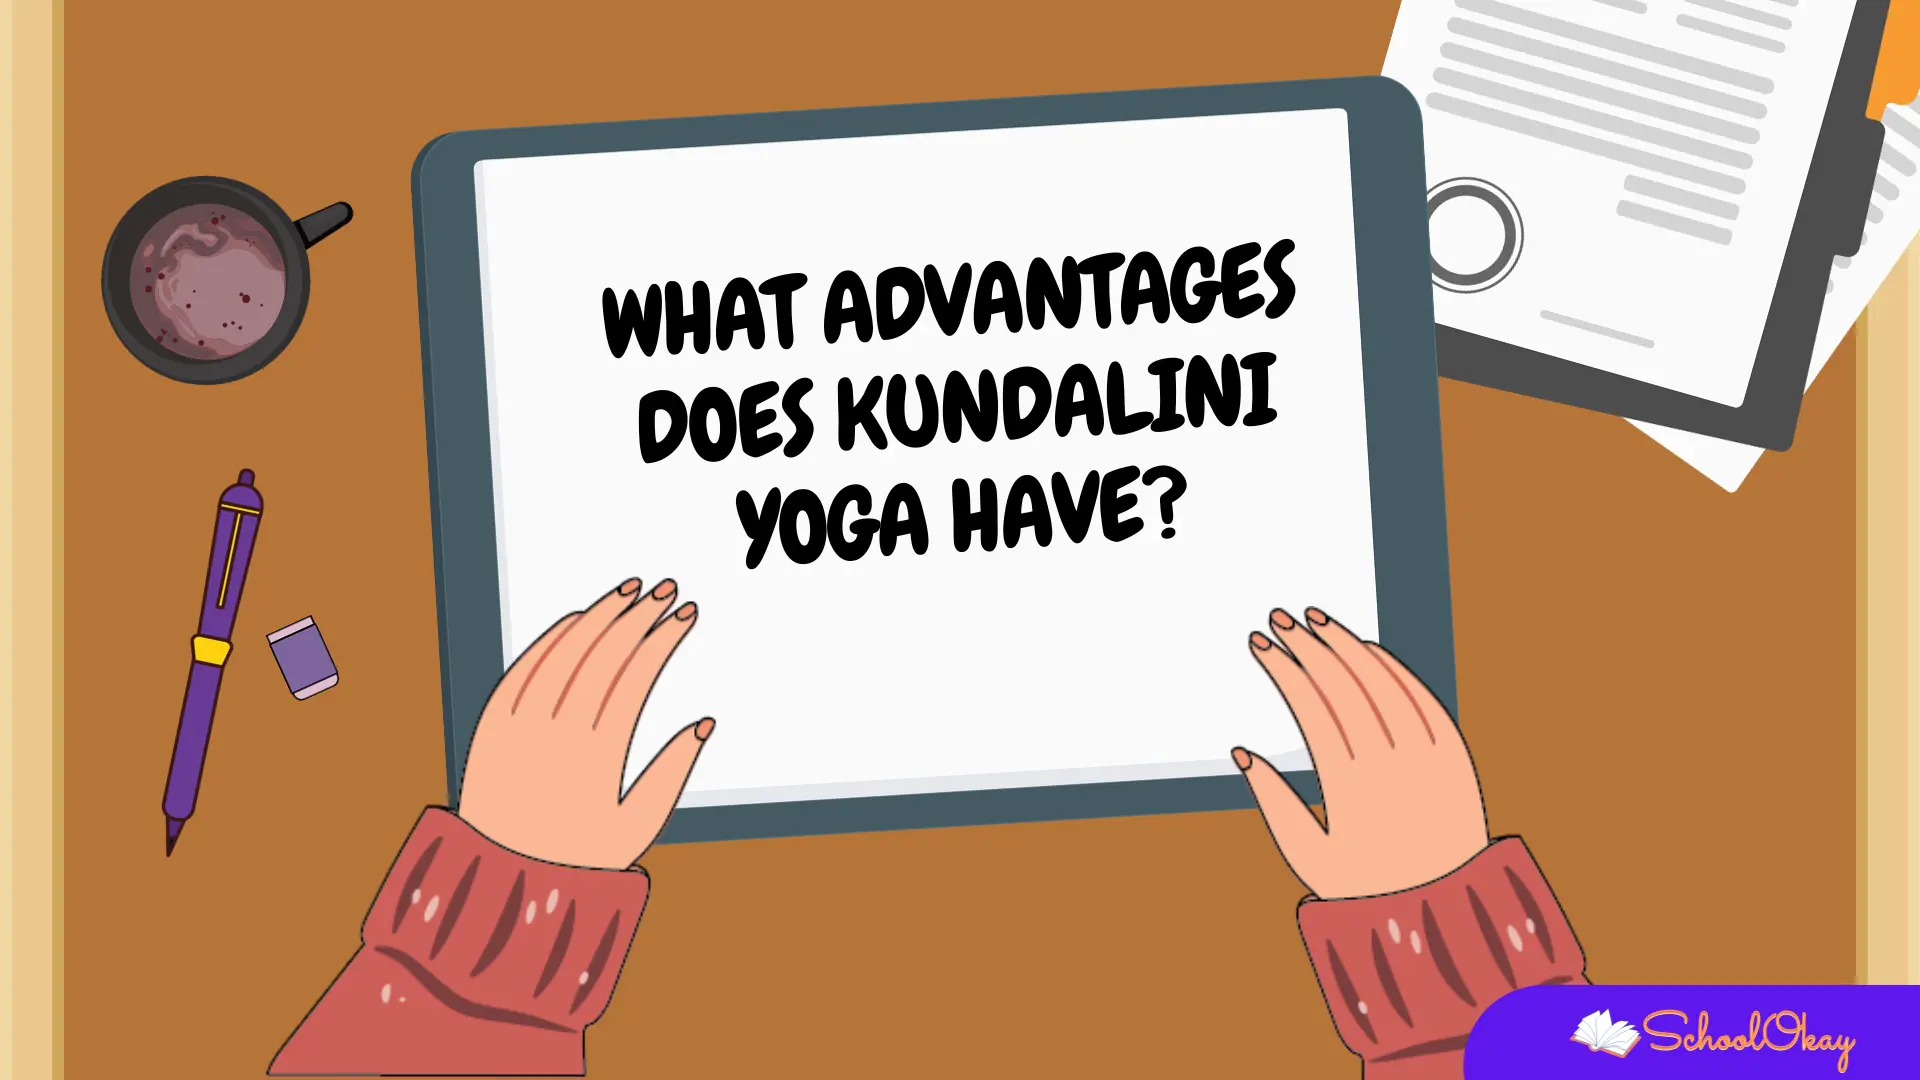 Kundalini yoga